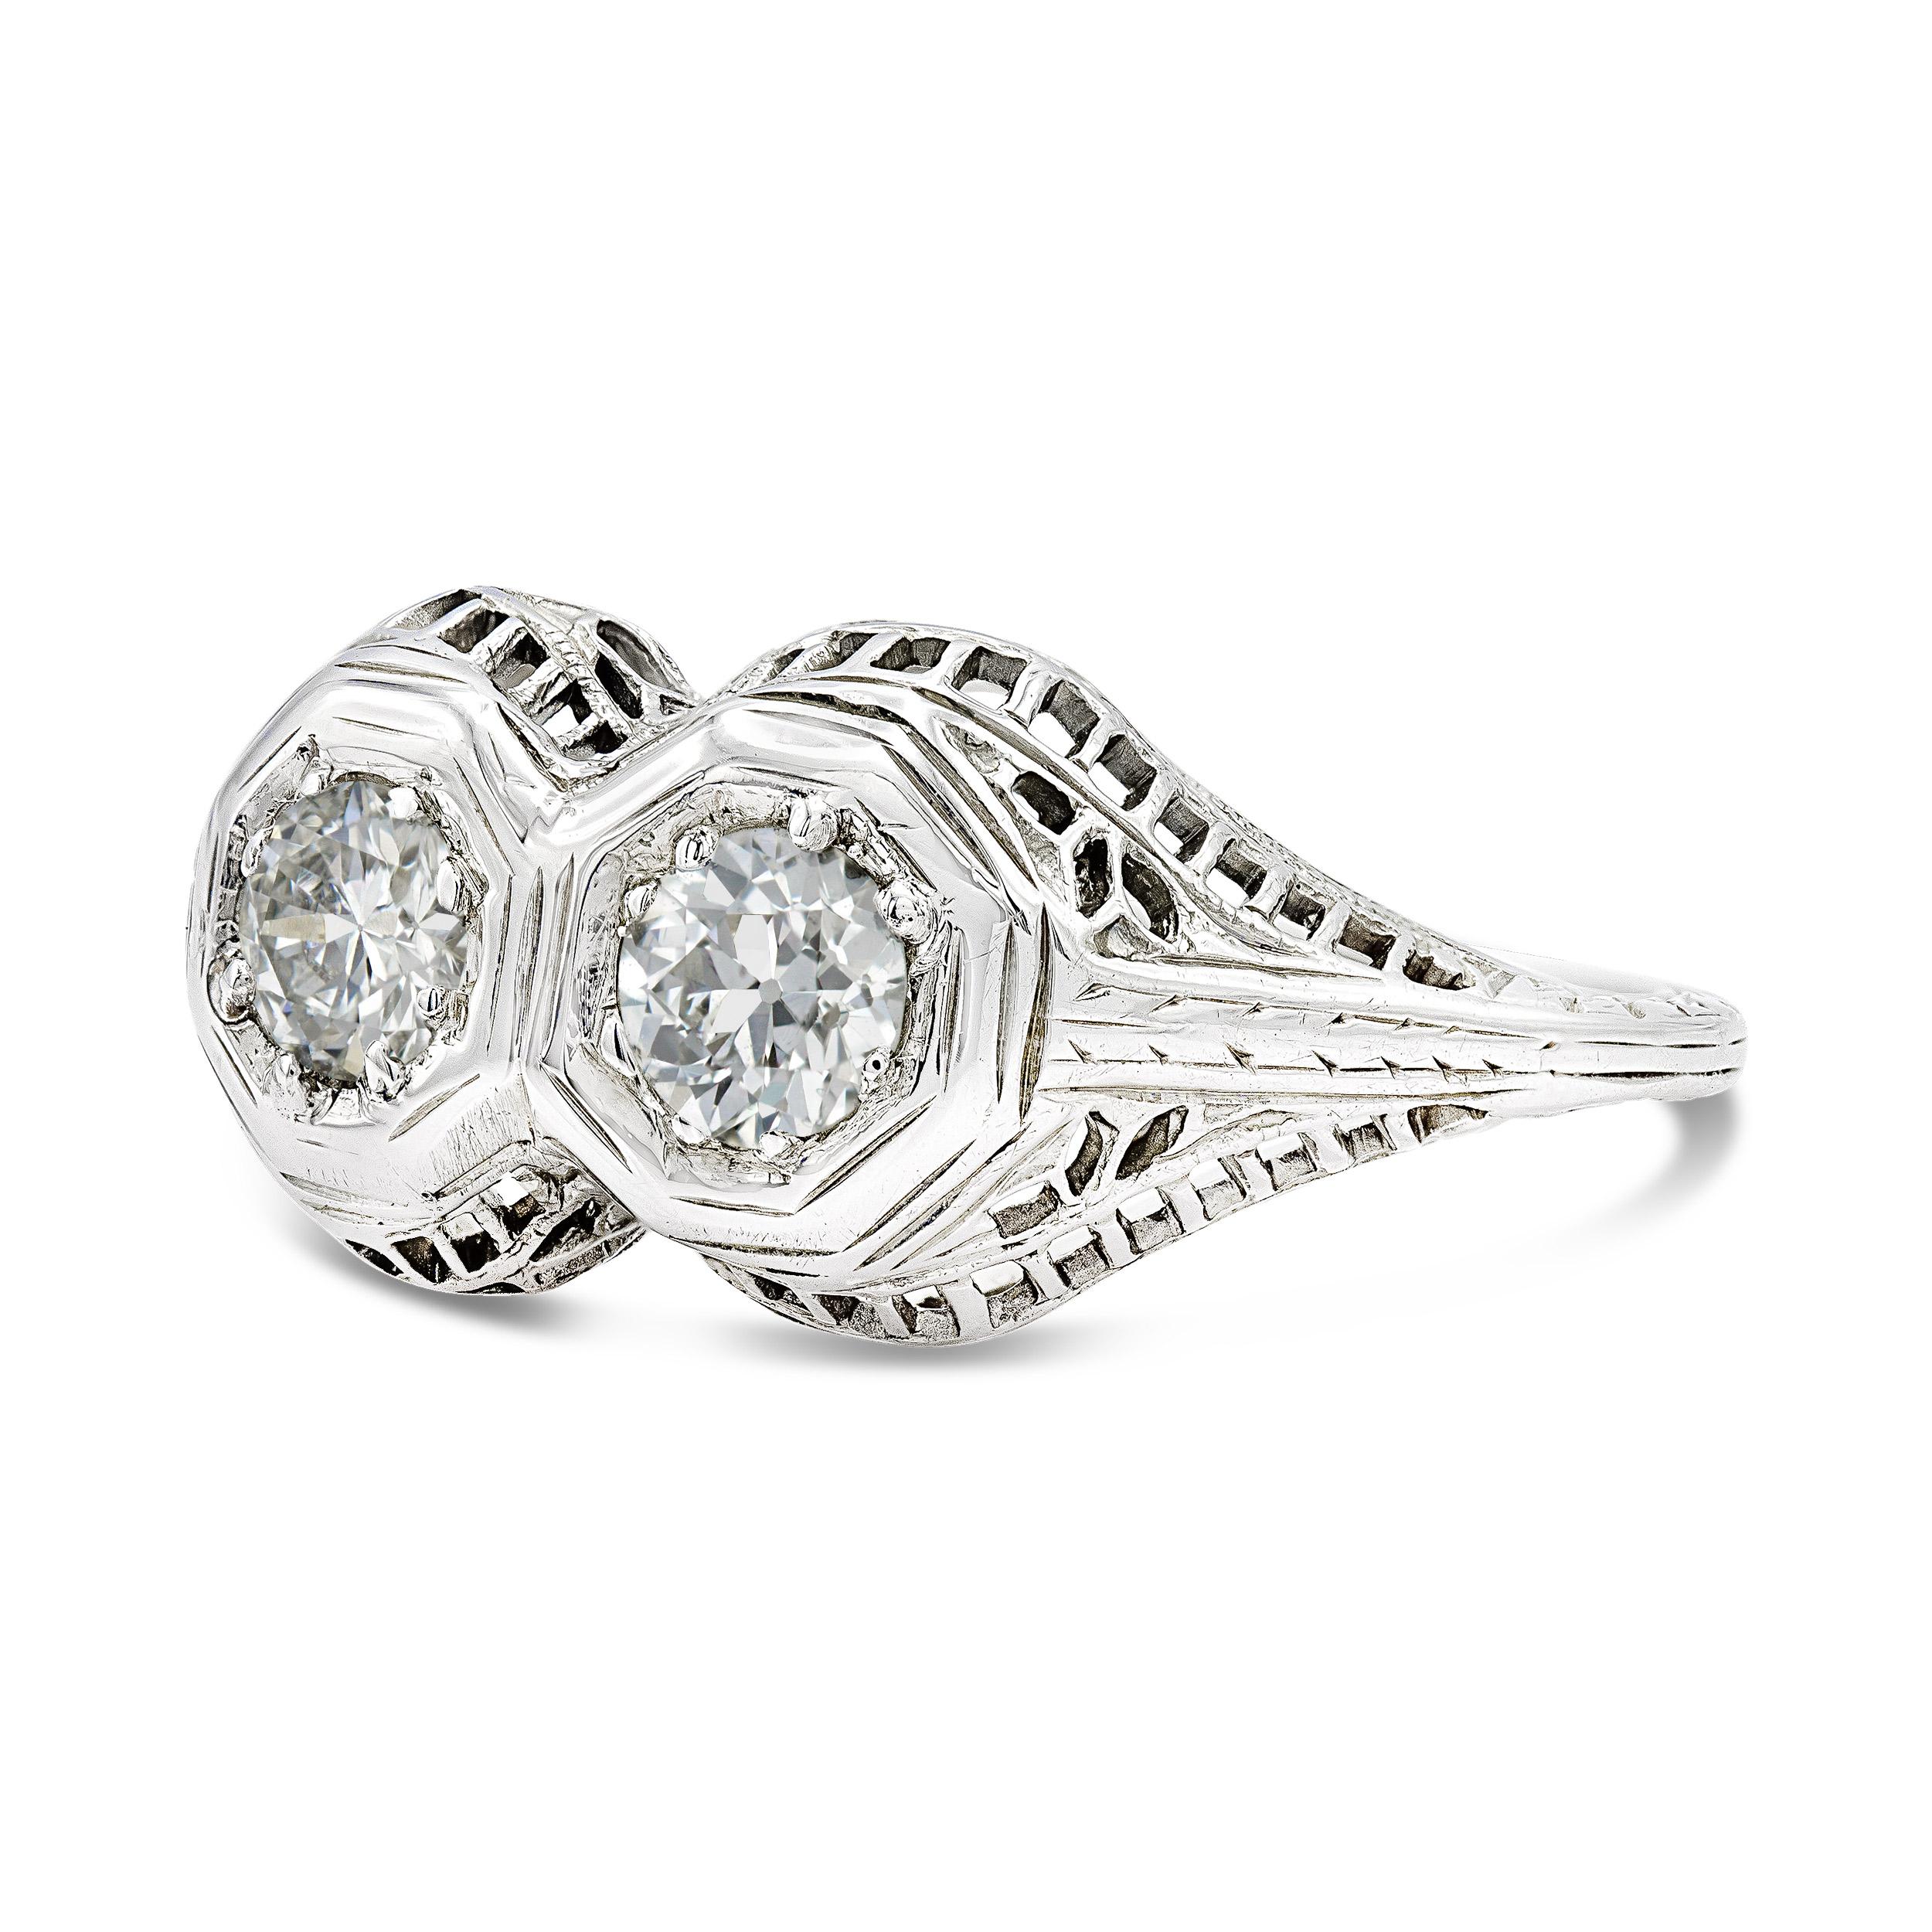 Ringe aus der Edwardianischen Ära zeichnen sich durch filigrane Verzierungen und einzigartige Akzente aus. Bei diesem Ring im Toi-et-Moi-Stil sind zwei Diamanten im alten europäischen Schliff in die Lünette gefasst und glänzen hell. Die